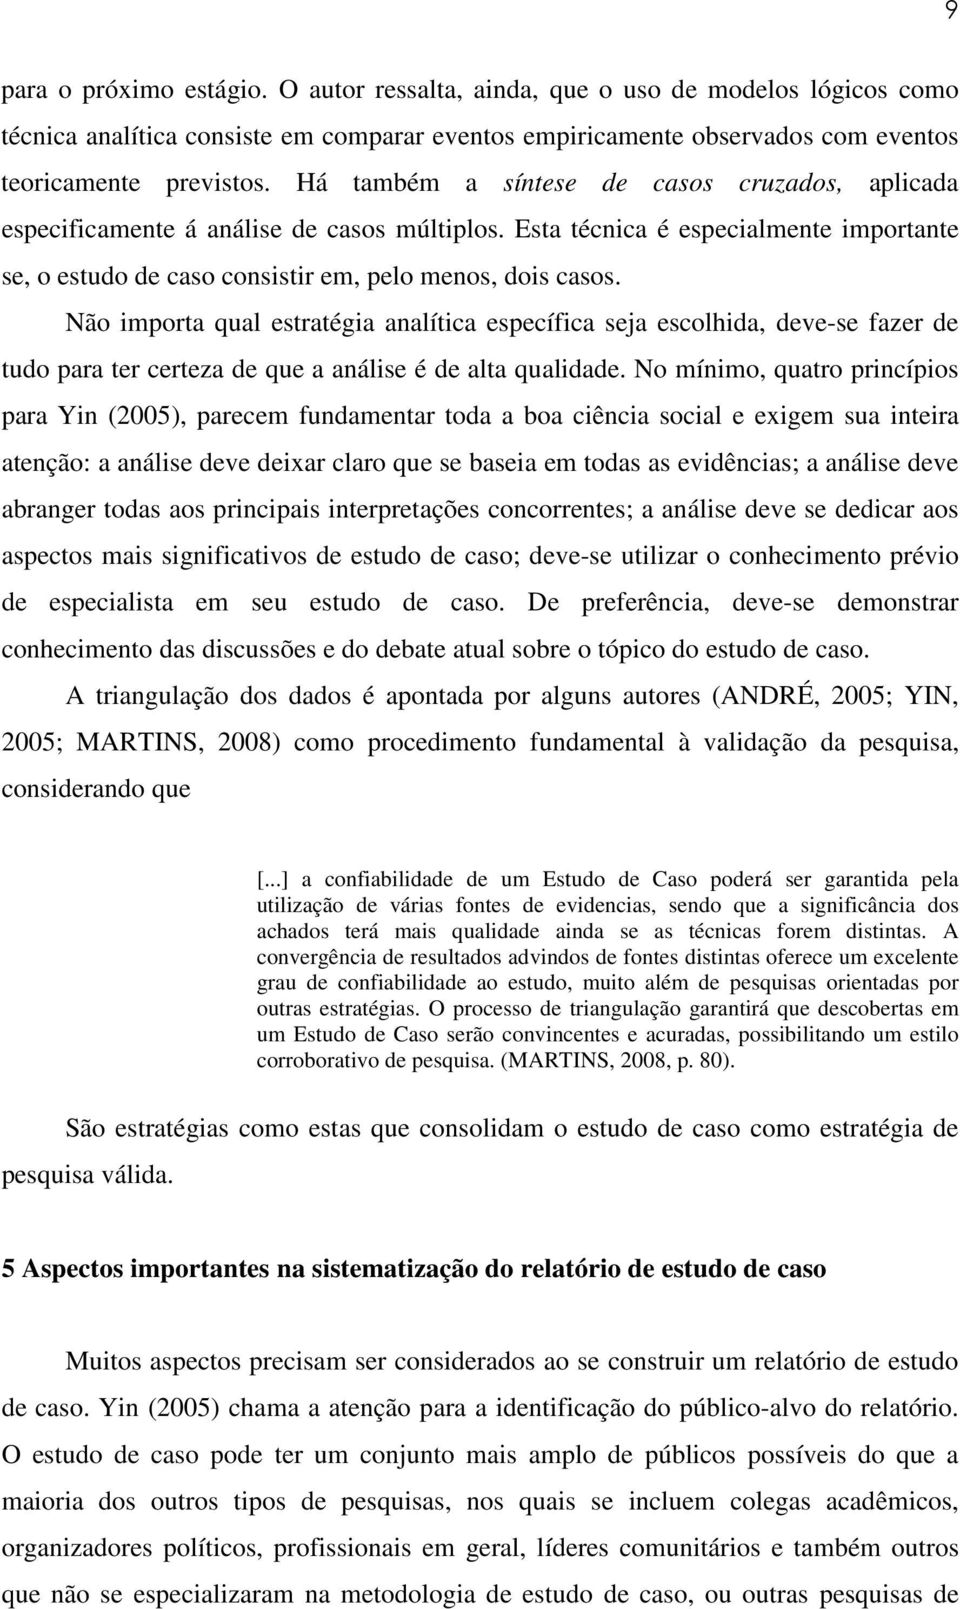 ESTUDO DE CASO NA PESQUISA QUALITATIVA EM EDUCAÇÃO: UMA METODOLOGIA - PDF  Free Download